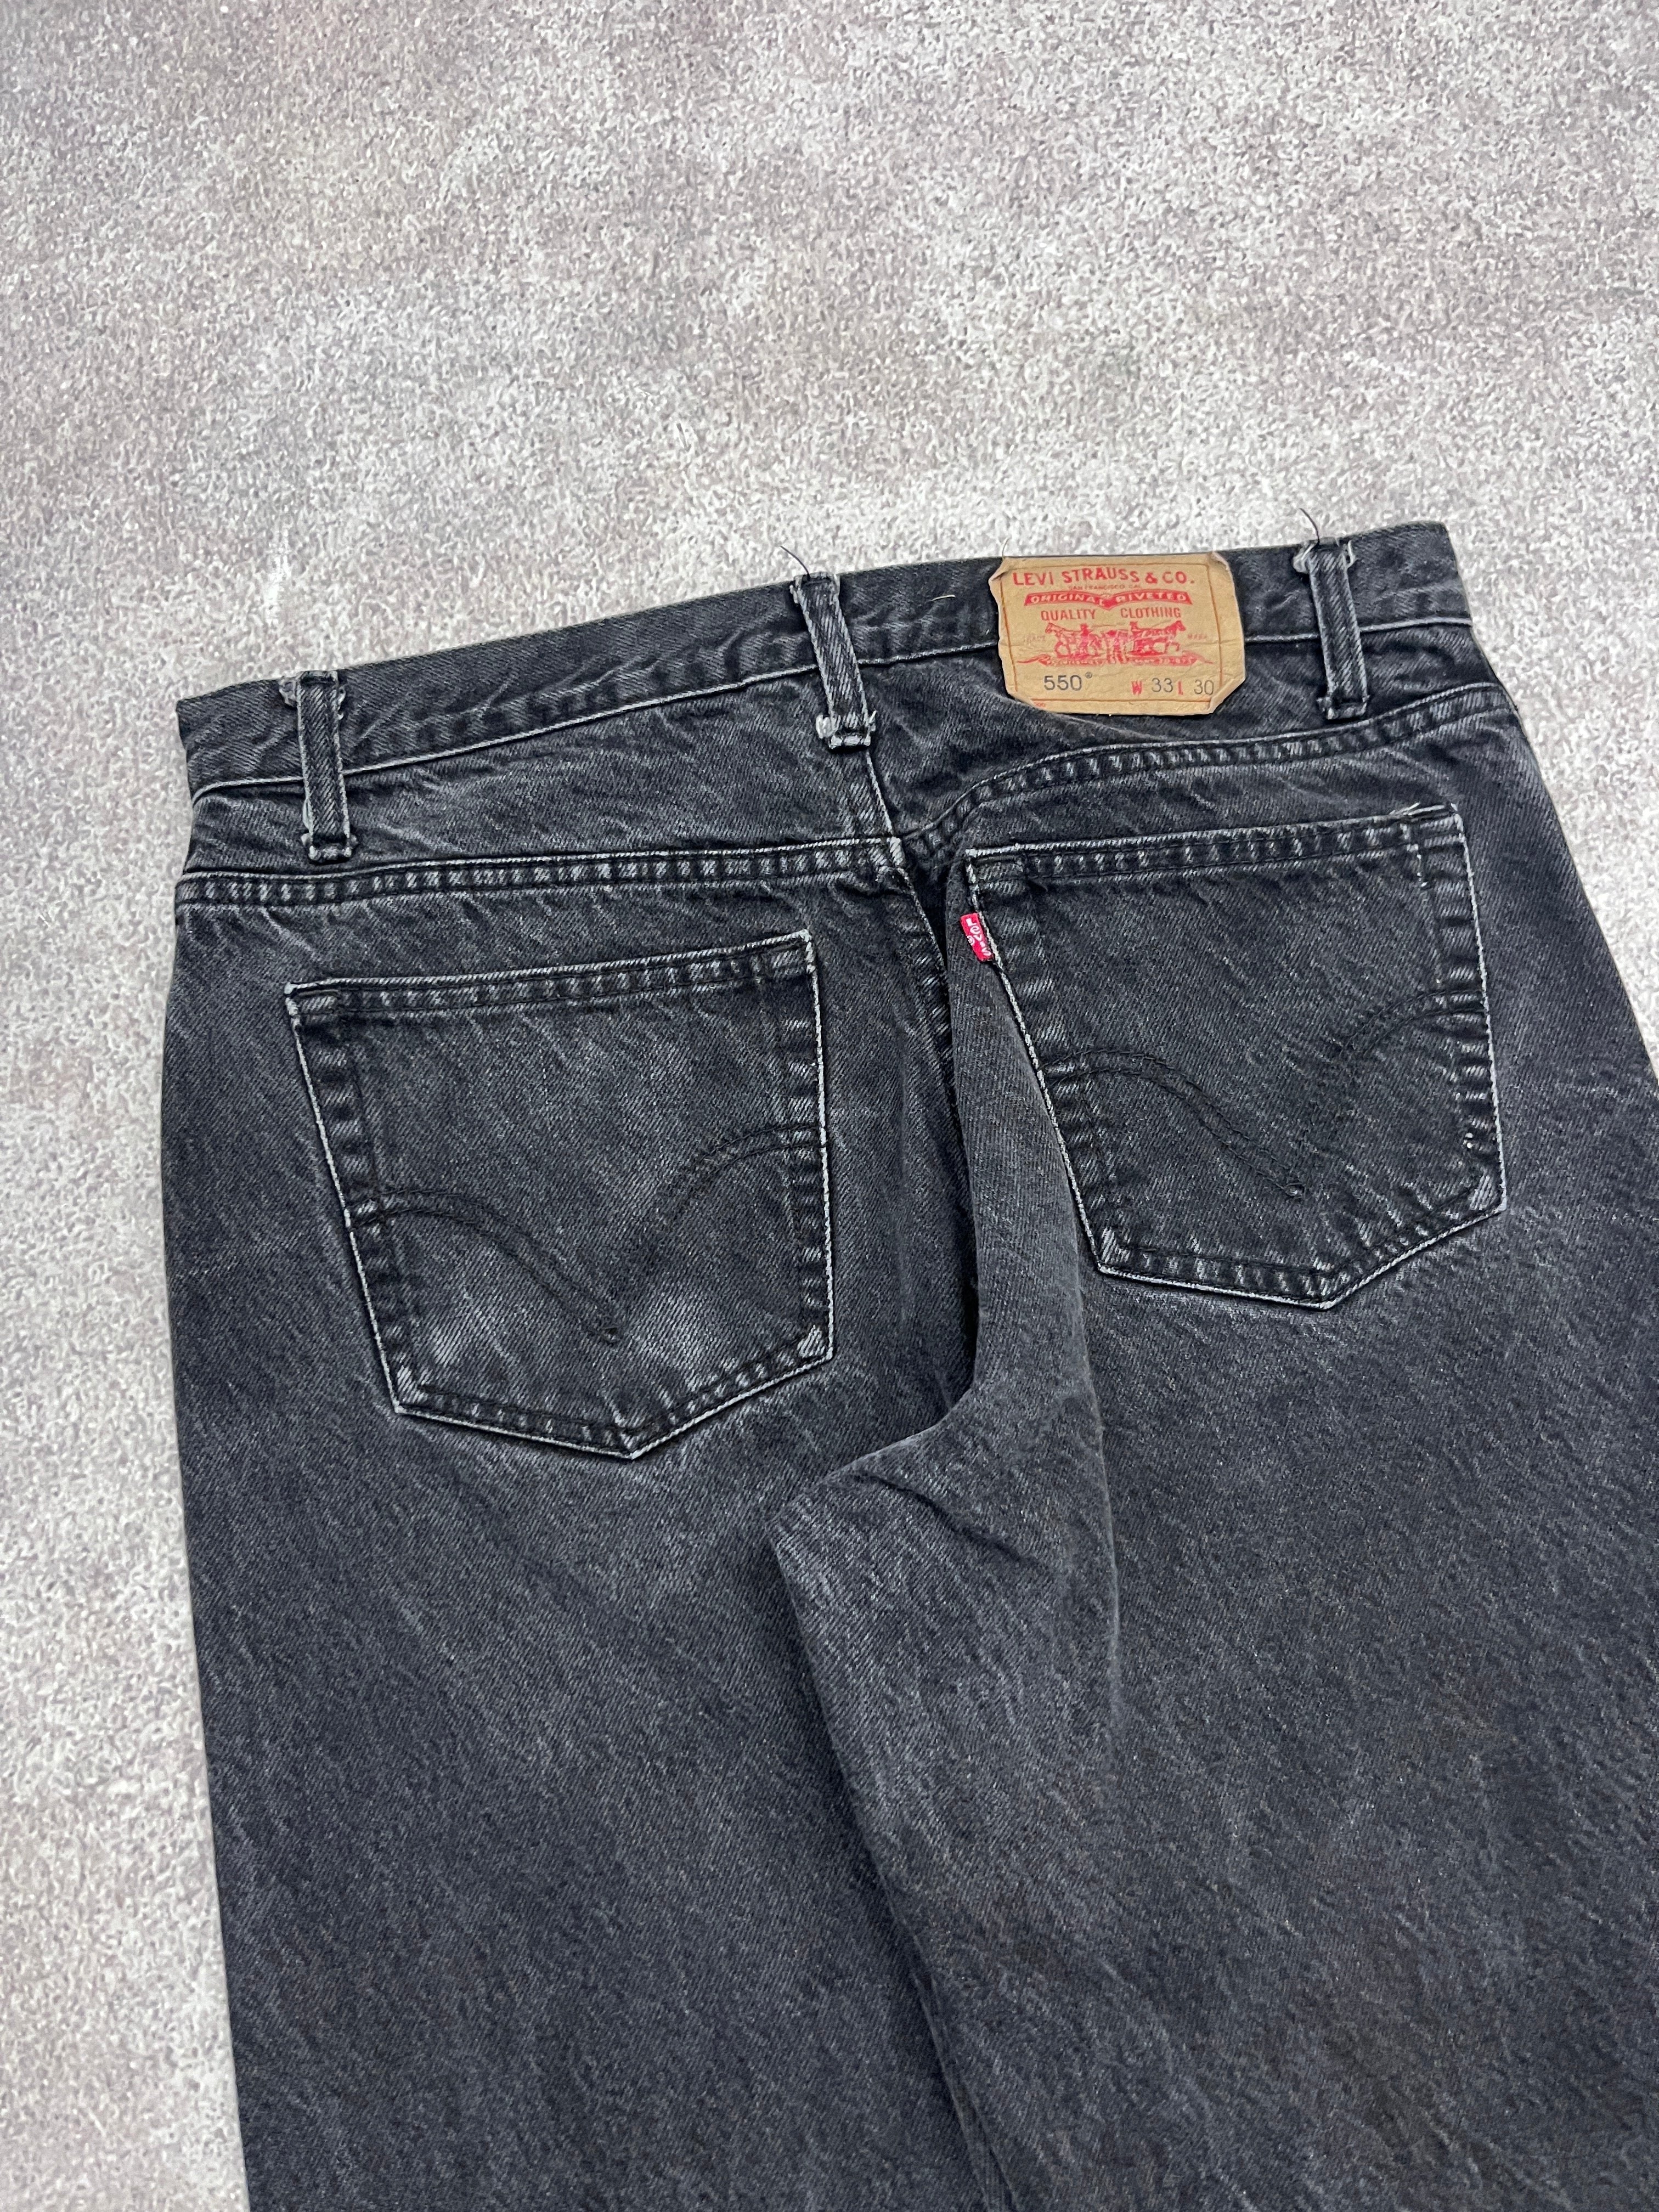 Vintage Levi 550 Denim Jeans // W33 L30 - RHAGHOUSE VINTAGE